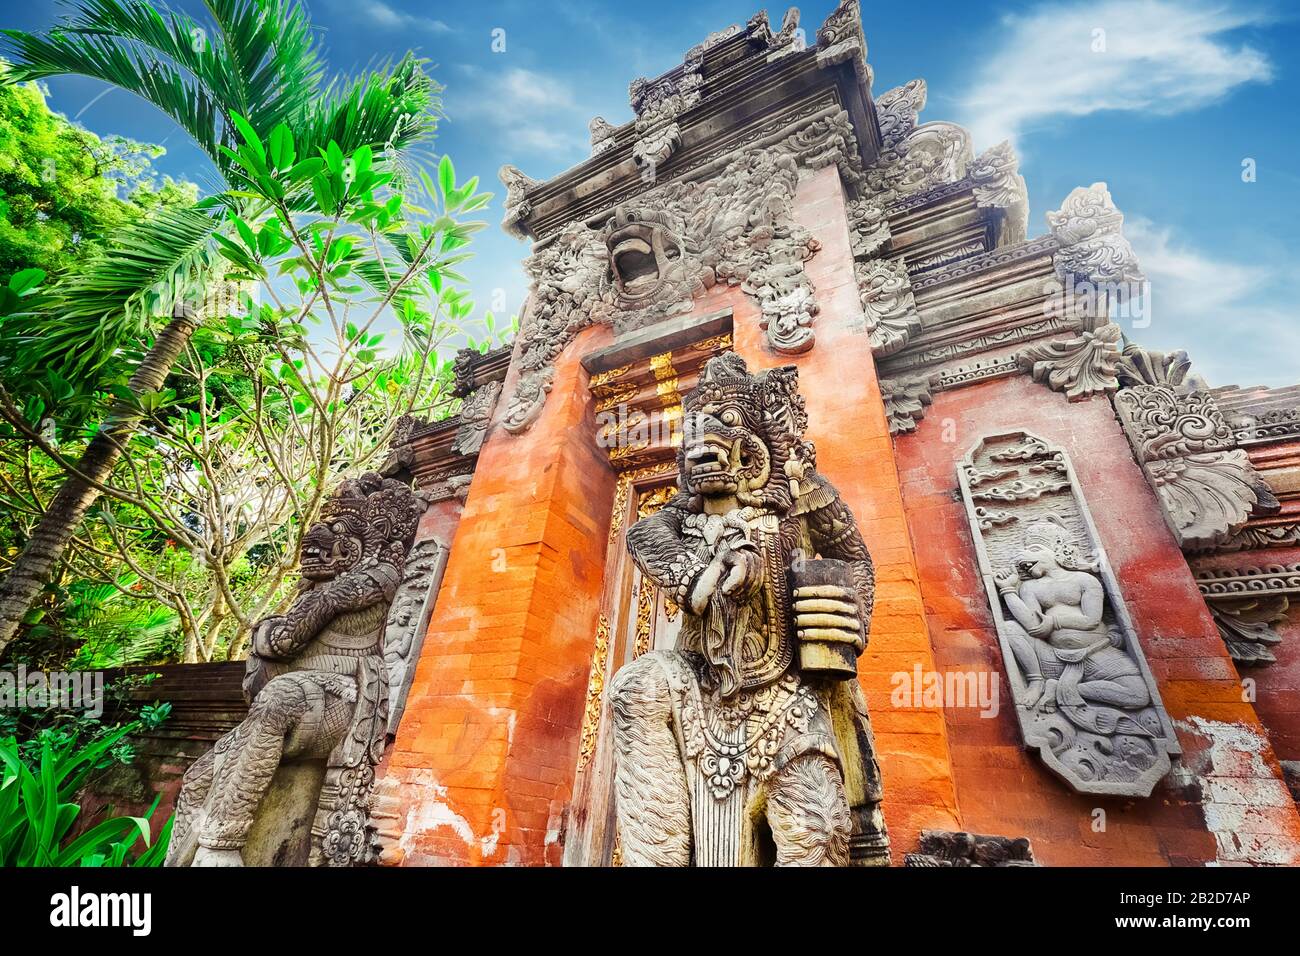 Maestoso e roccia alta statue Barong Lion Guard vicino santuario mura illuminate dal sole al giorno soleggiato, Gunung Kawi tempio complesso, Bali, Indonesia. In stile Balinese Foto Stock